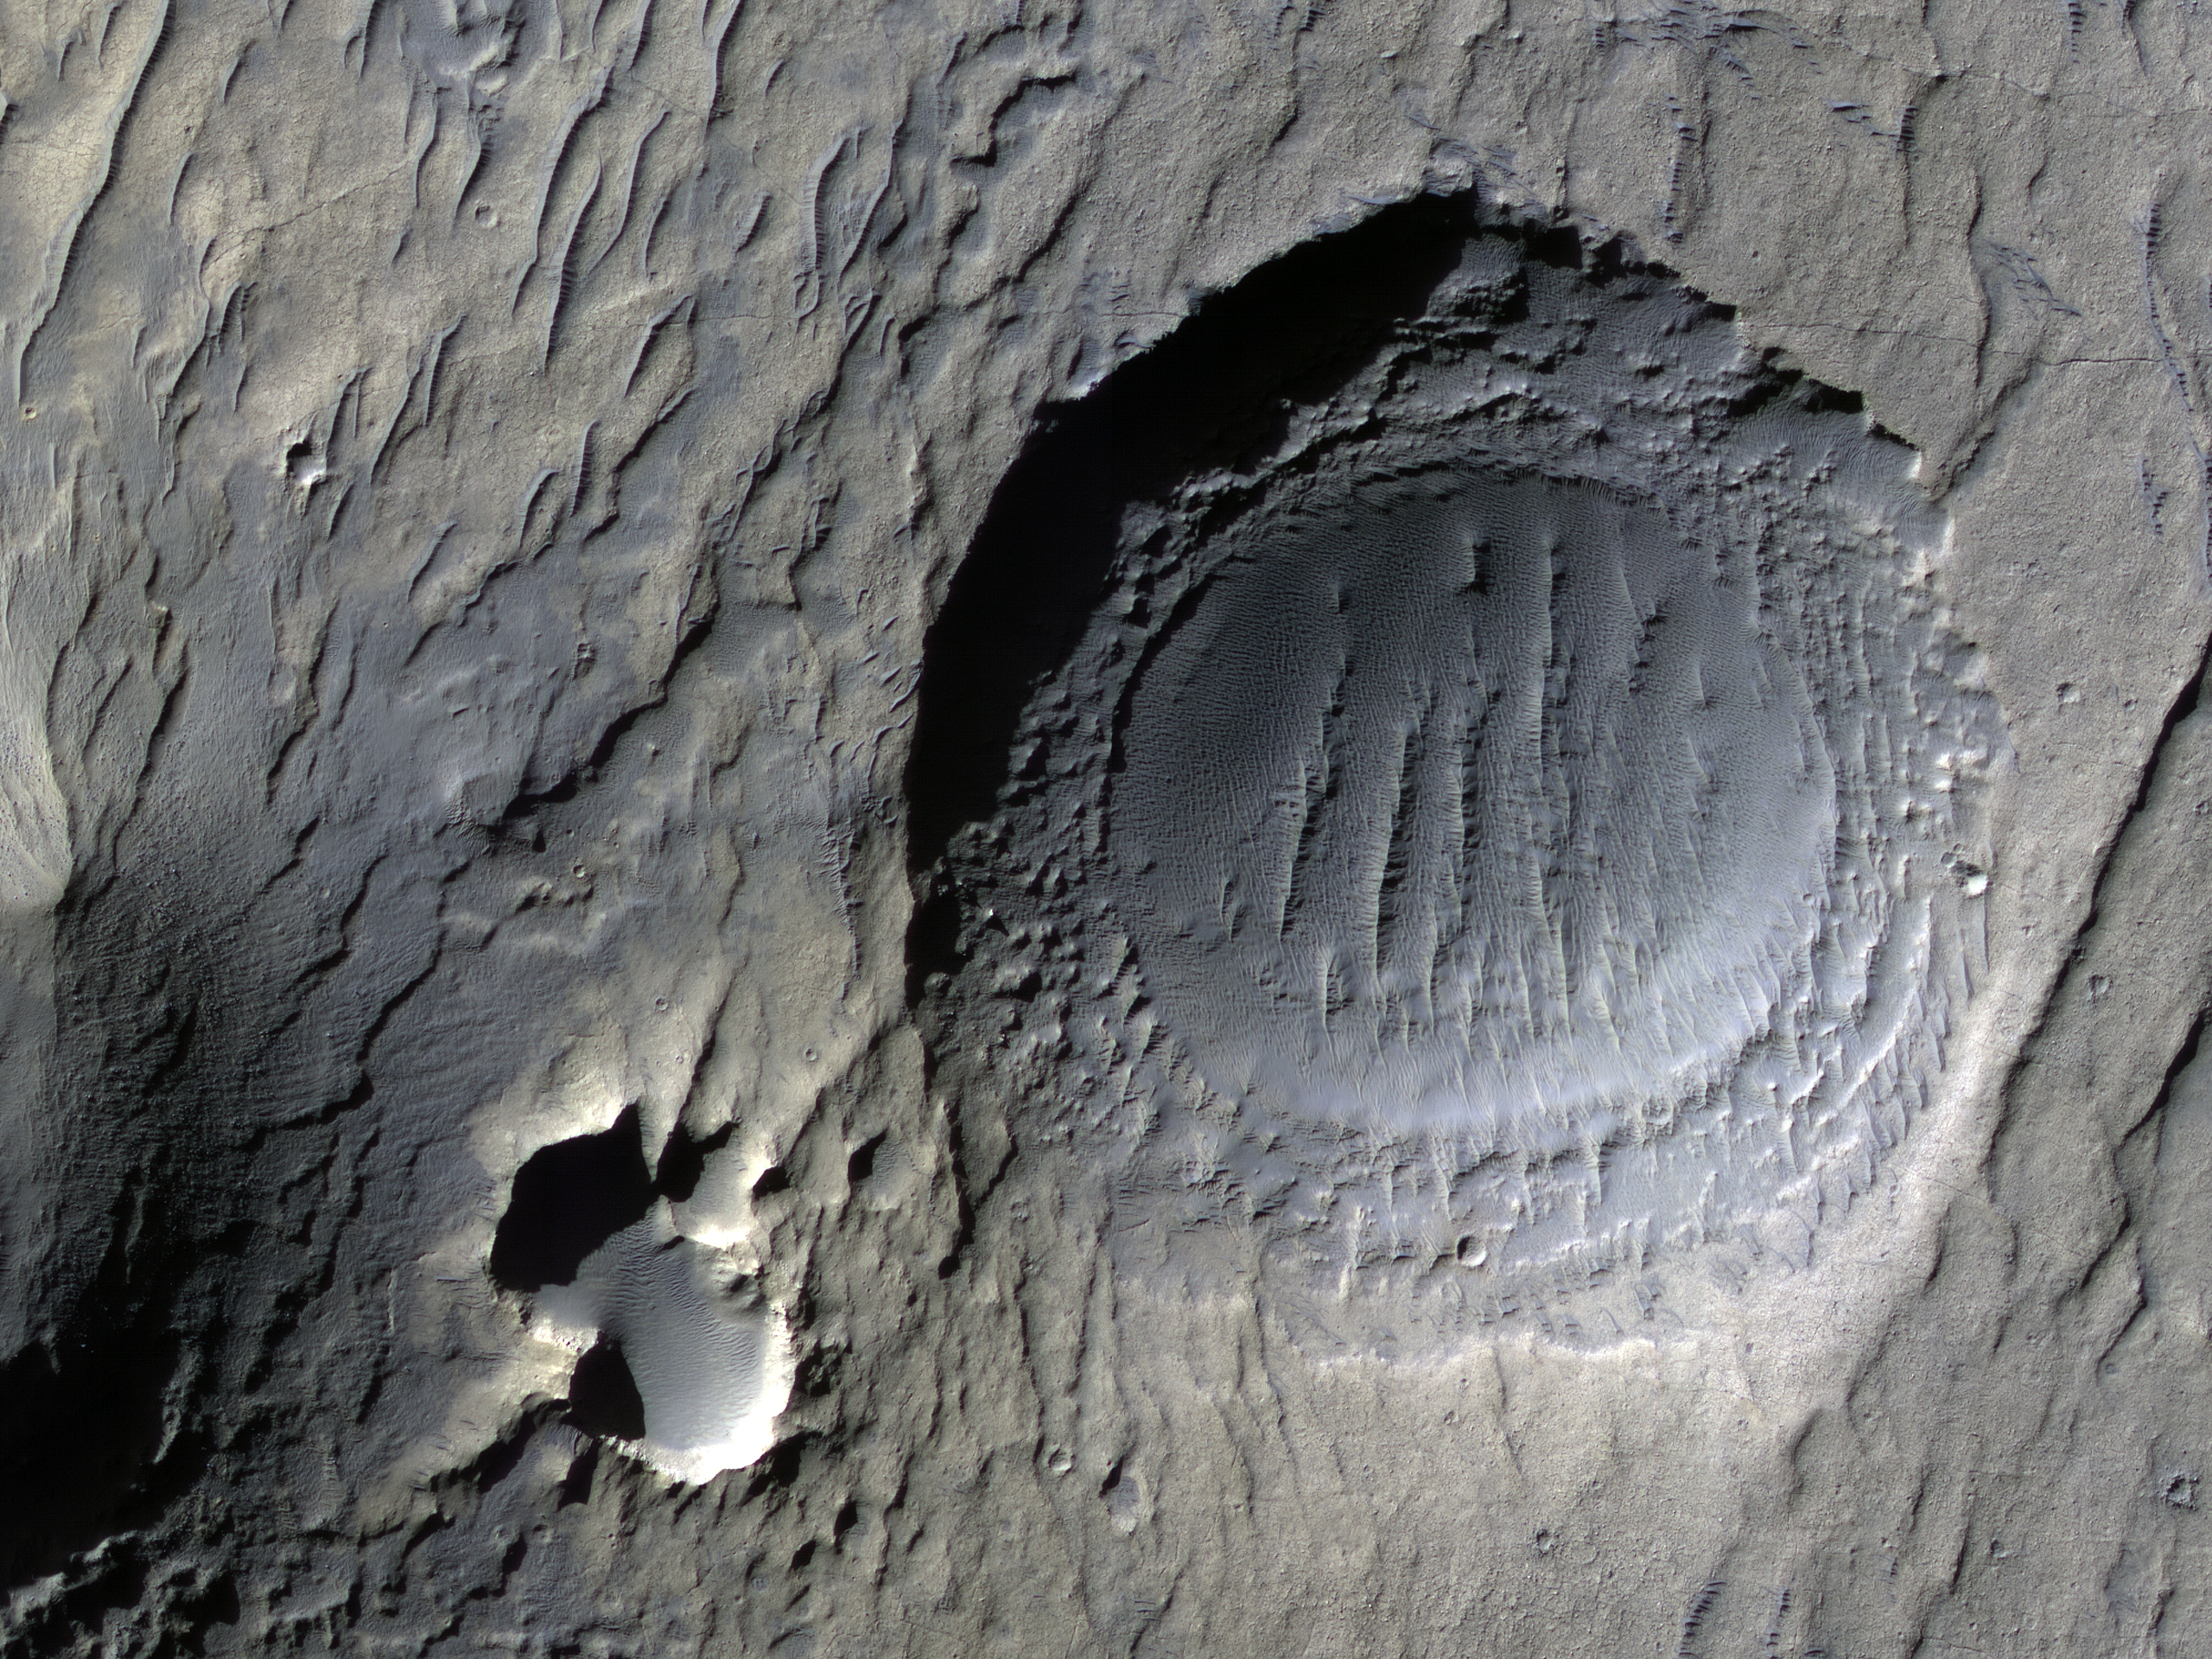 Degradation of Craters in Noachis Terra